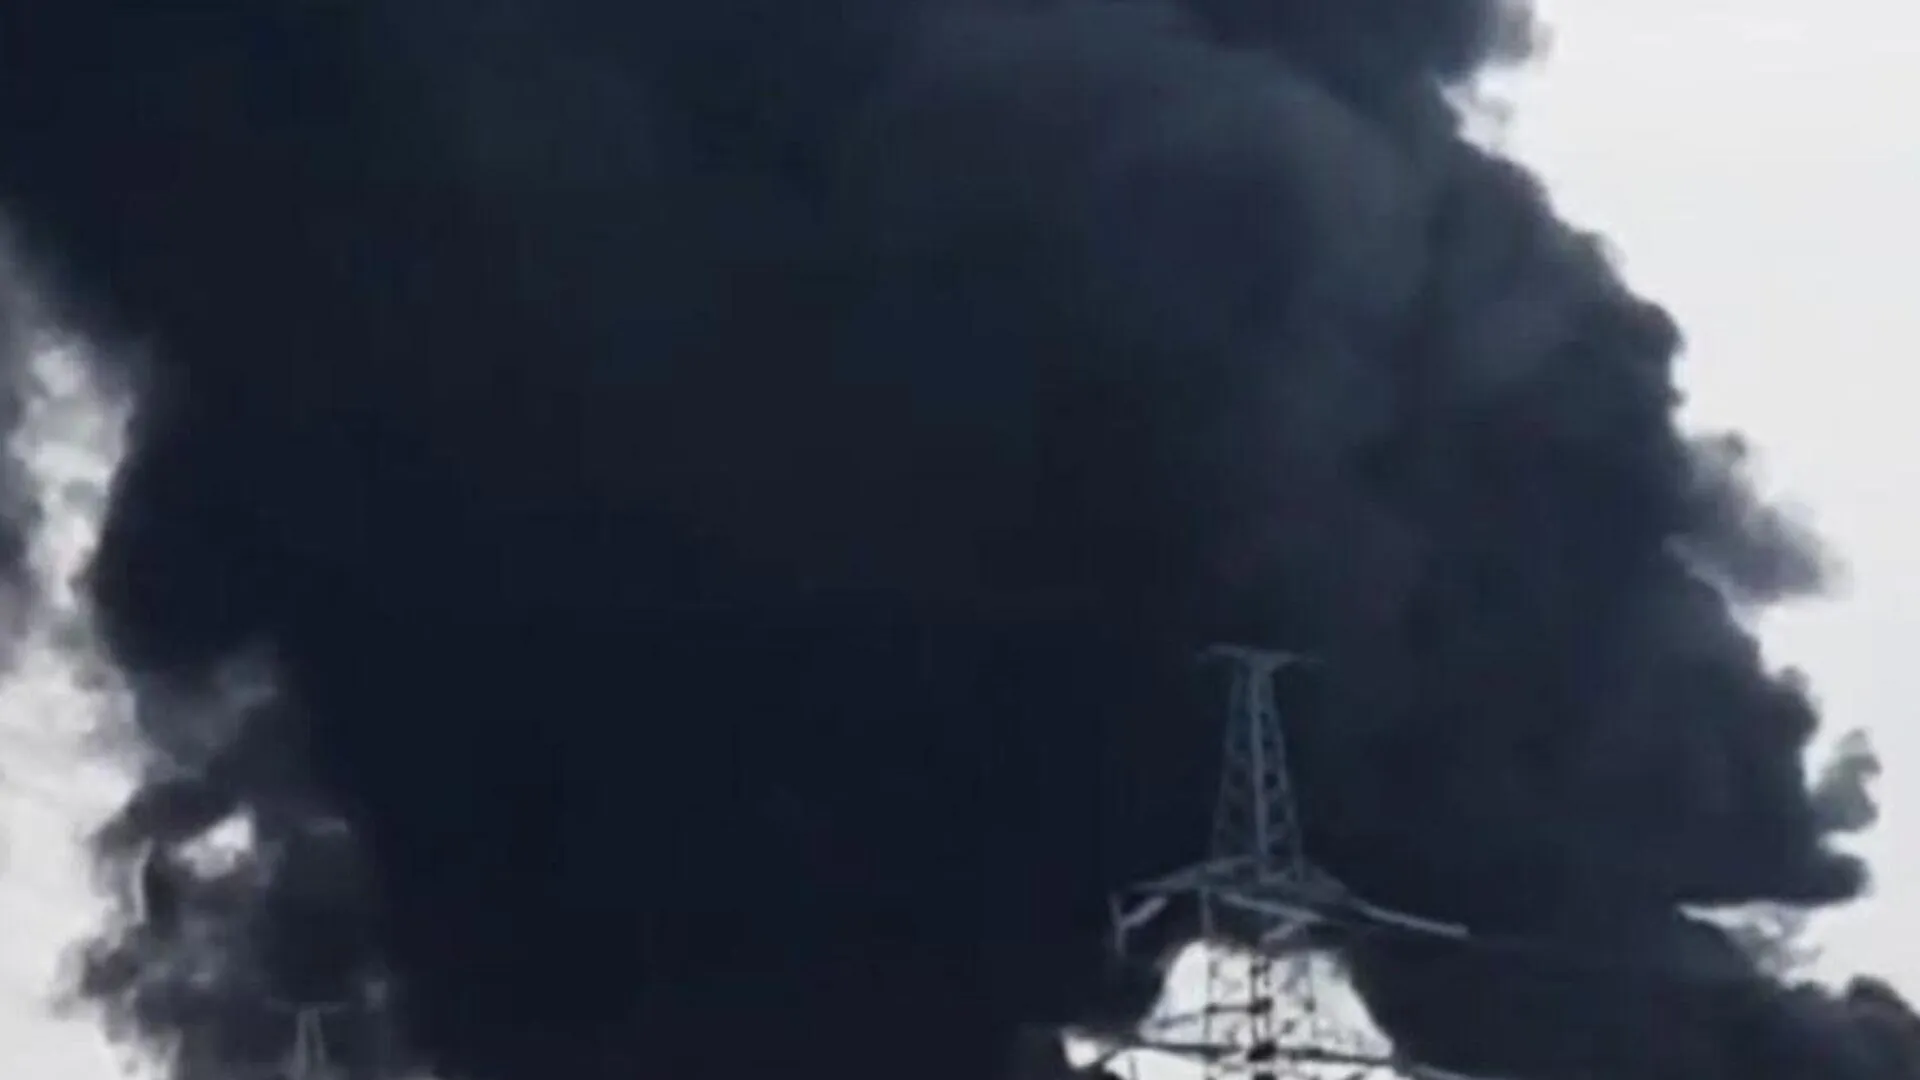 Появилось видео, предположительно, с места взрывов в Славянске-на-Кубани